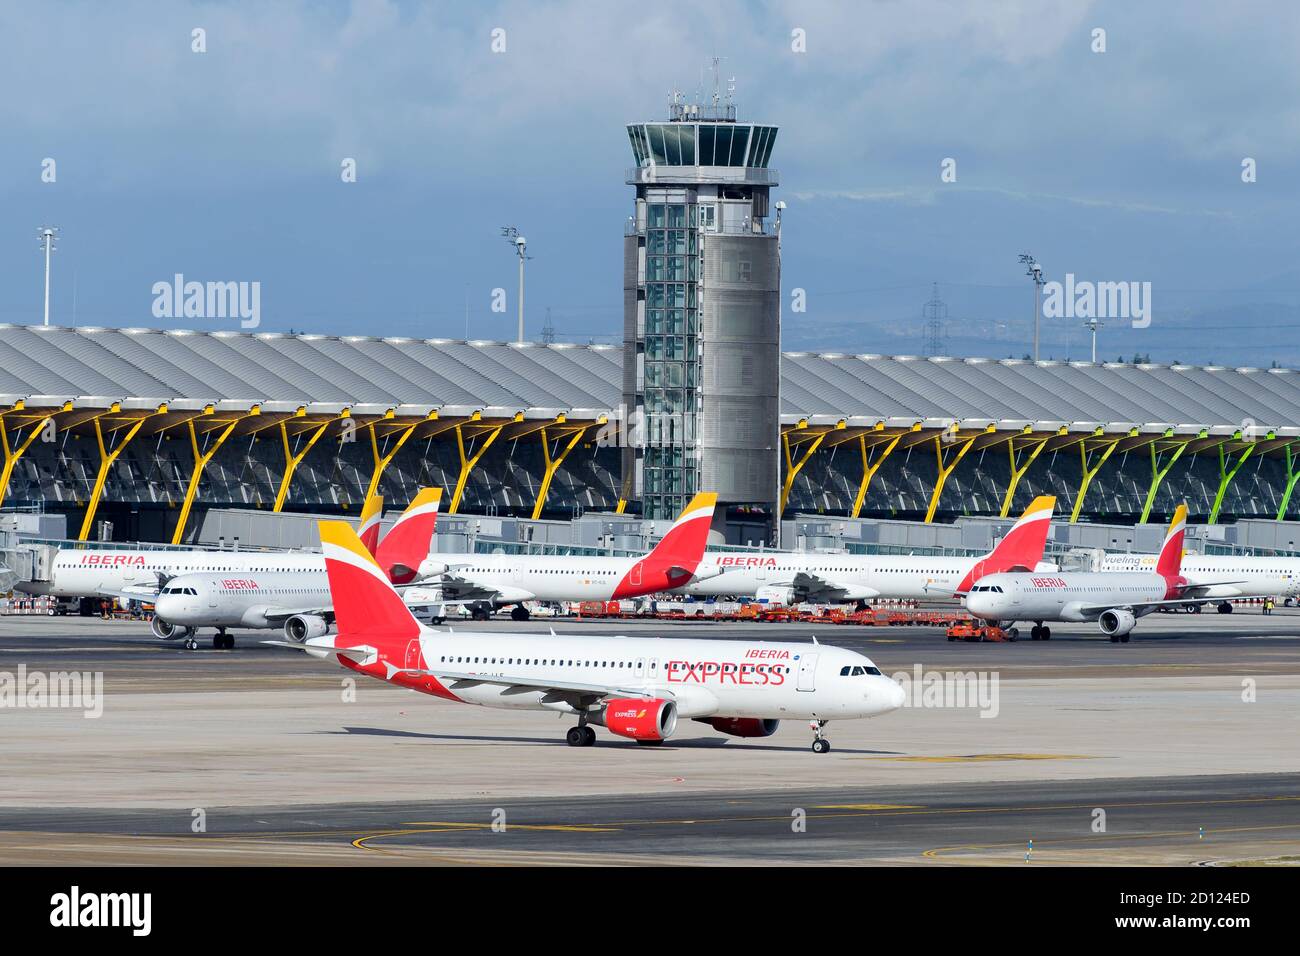 Iberia airlines immagini e fotografie stock ad alta risoluzione - Alamy